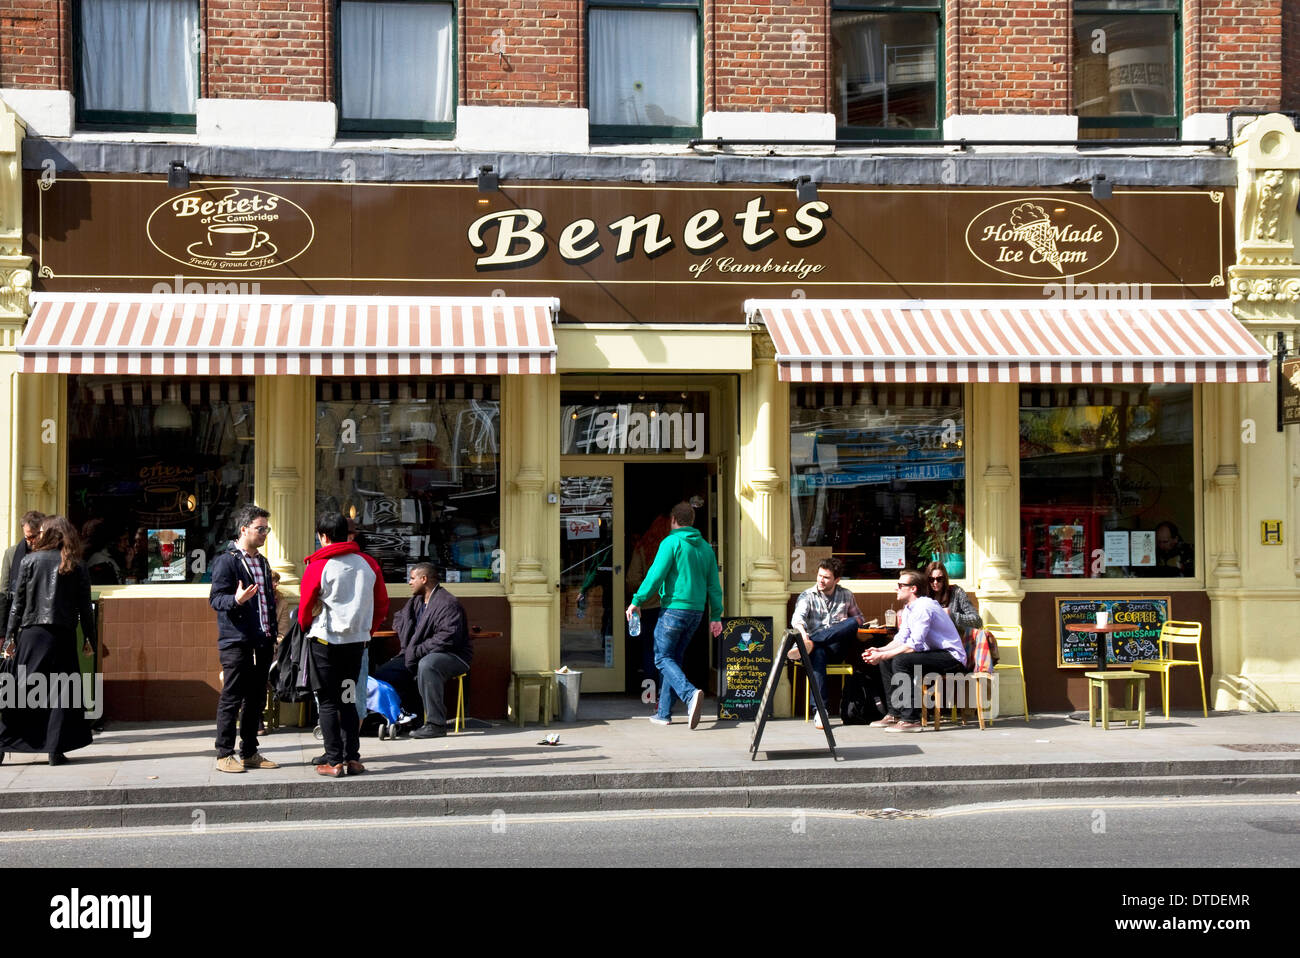 Benets di Cambridge cafe/ristorante/ gelateria, Bethnal Green Road (parte superiore del Brick Lane), Shoreditch, Londra, Regno Unito. Foto Stock